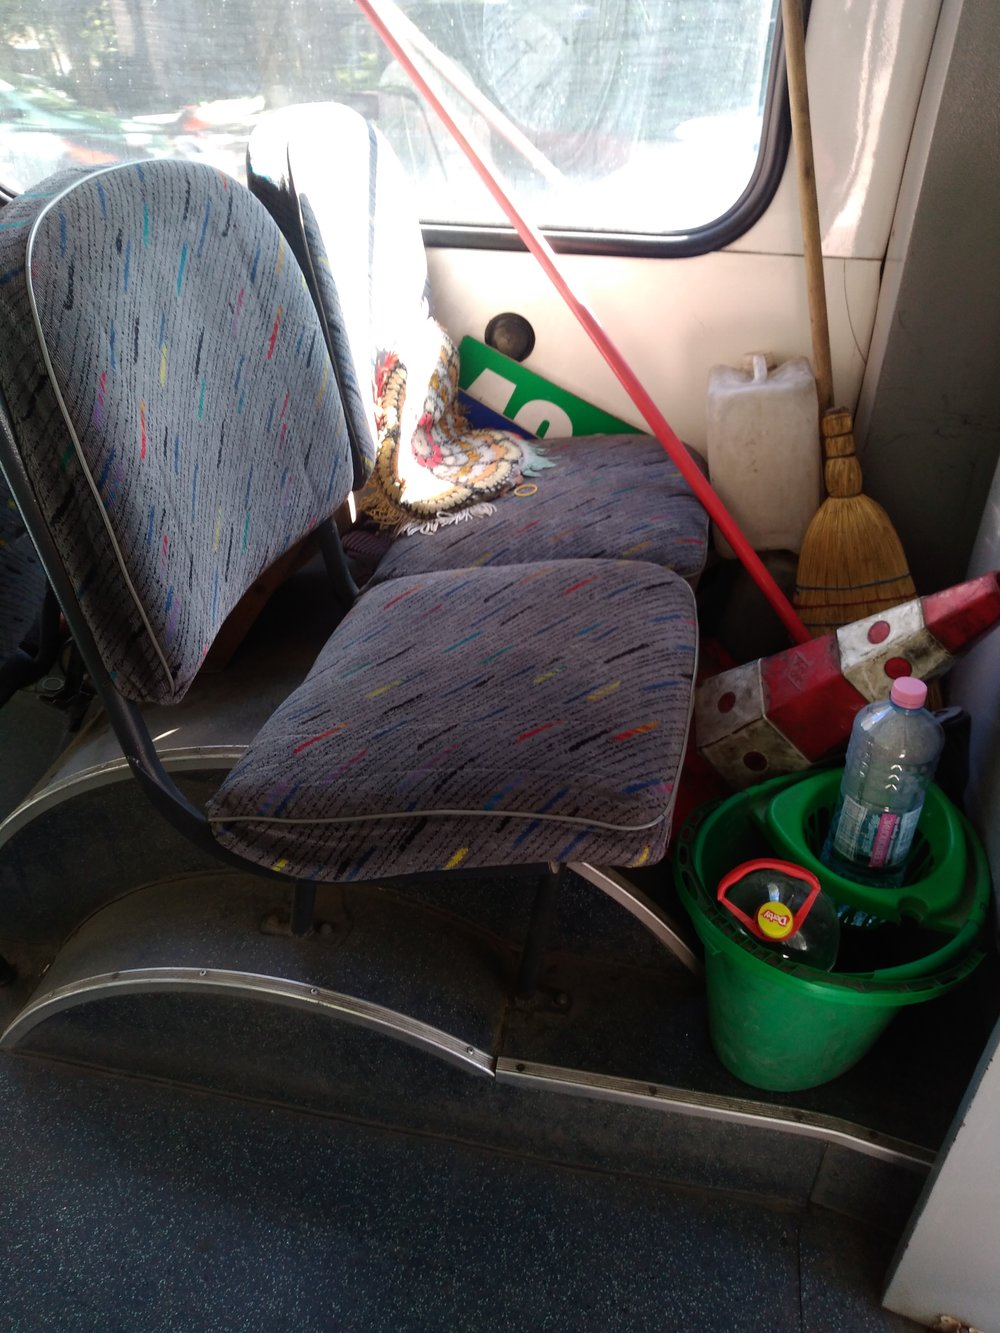  Kužel, kýbl, mop, saponát a další náčiní pro každý případ si vozí trolejbusy s sebou, co na tom, že jsou zabrány hned dvě sedačky. 